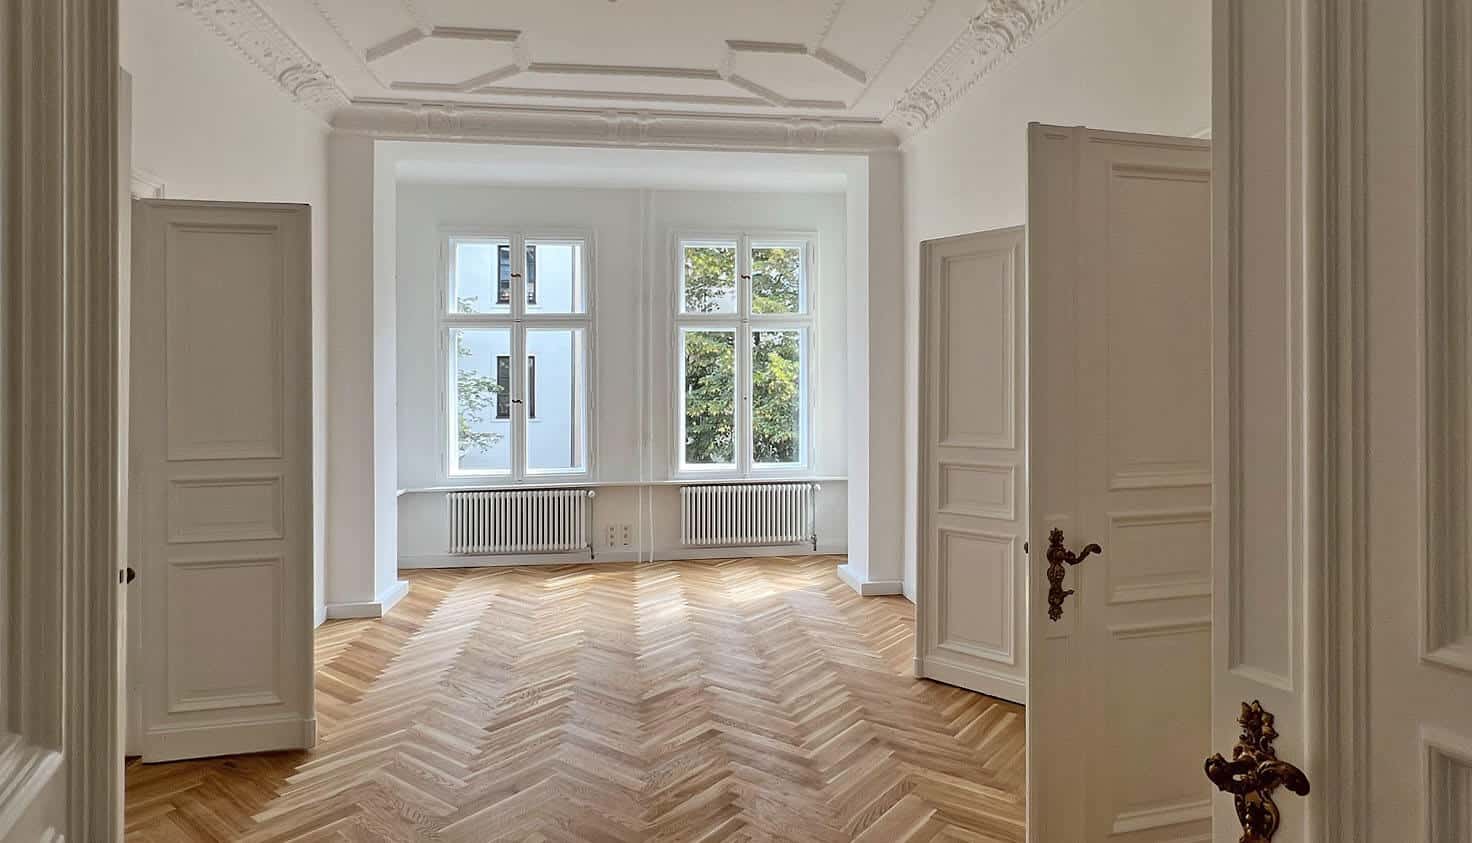 Malerbetrieb Kluge Berlin: Referenz Luxuriöse Wohnung nähe Kurfürstendamm - Impression